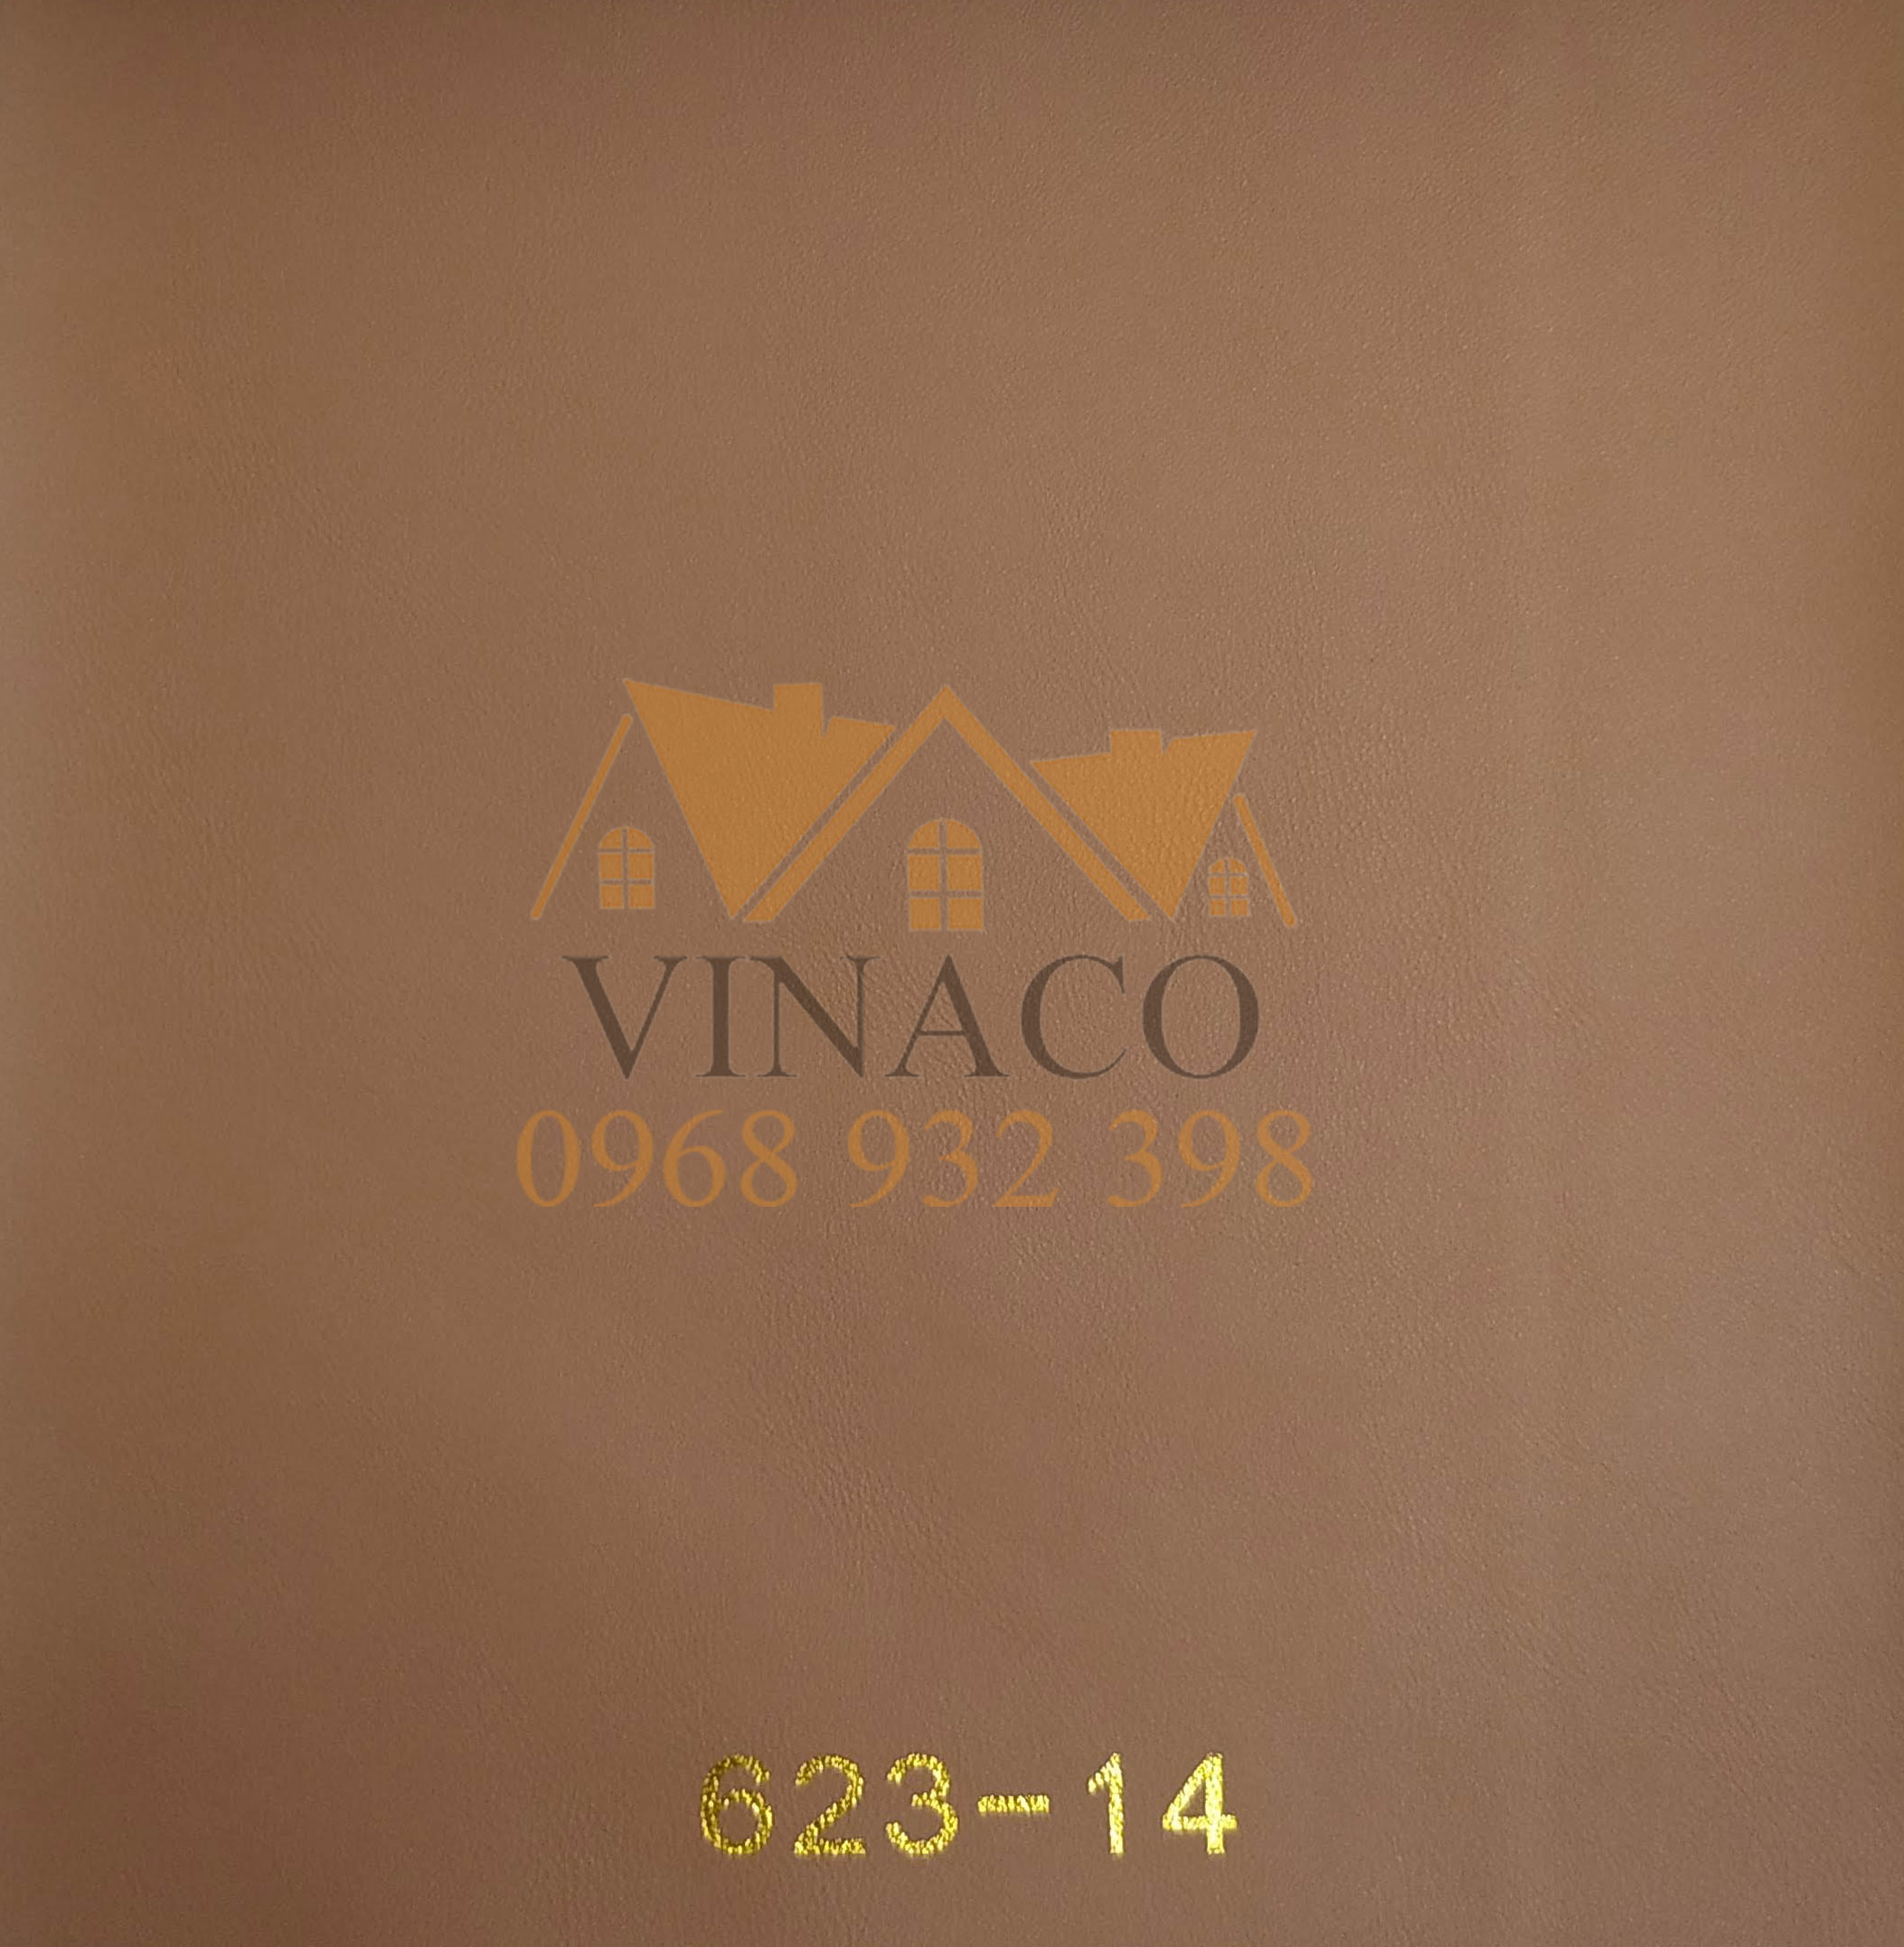 Vinaco bán da ghế sofa với giả tốt nhất trên thị trường